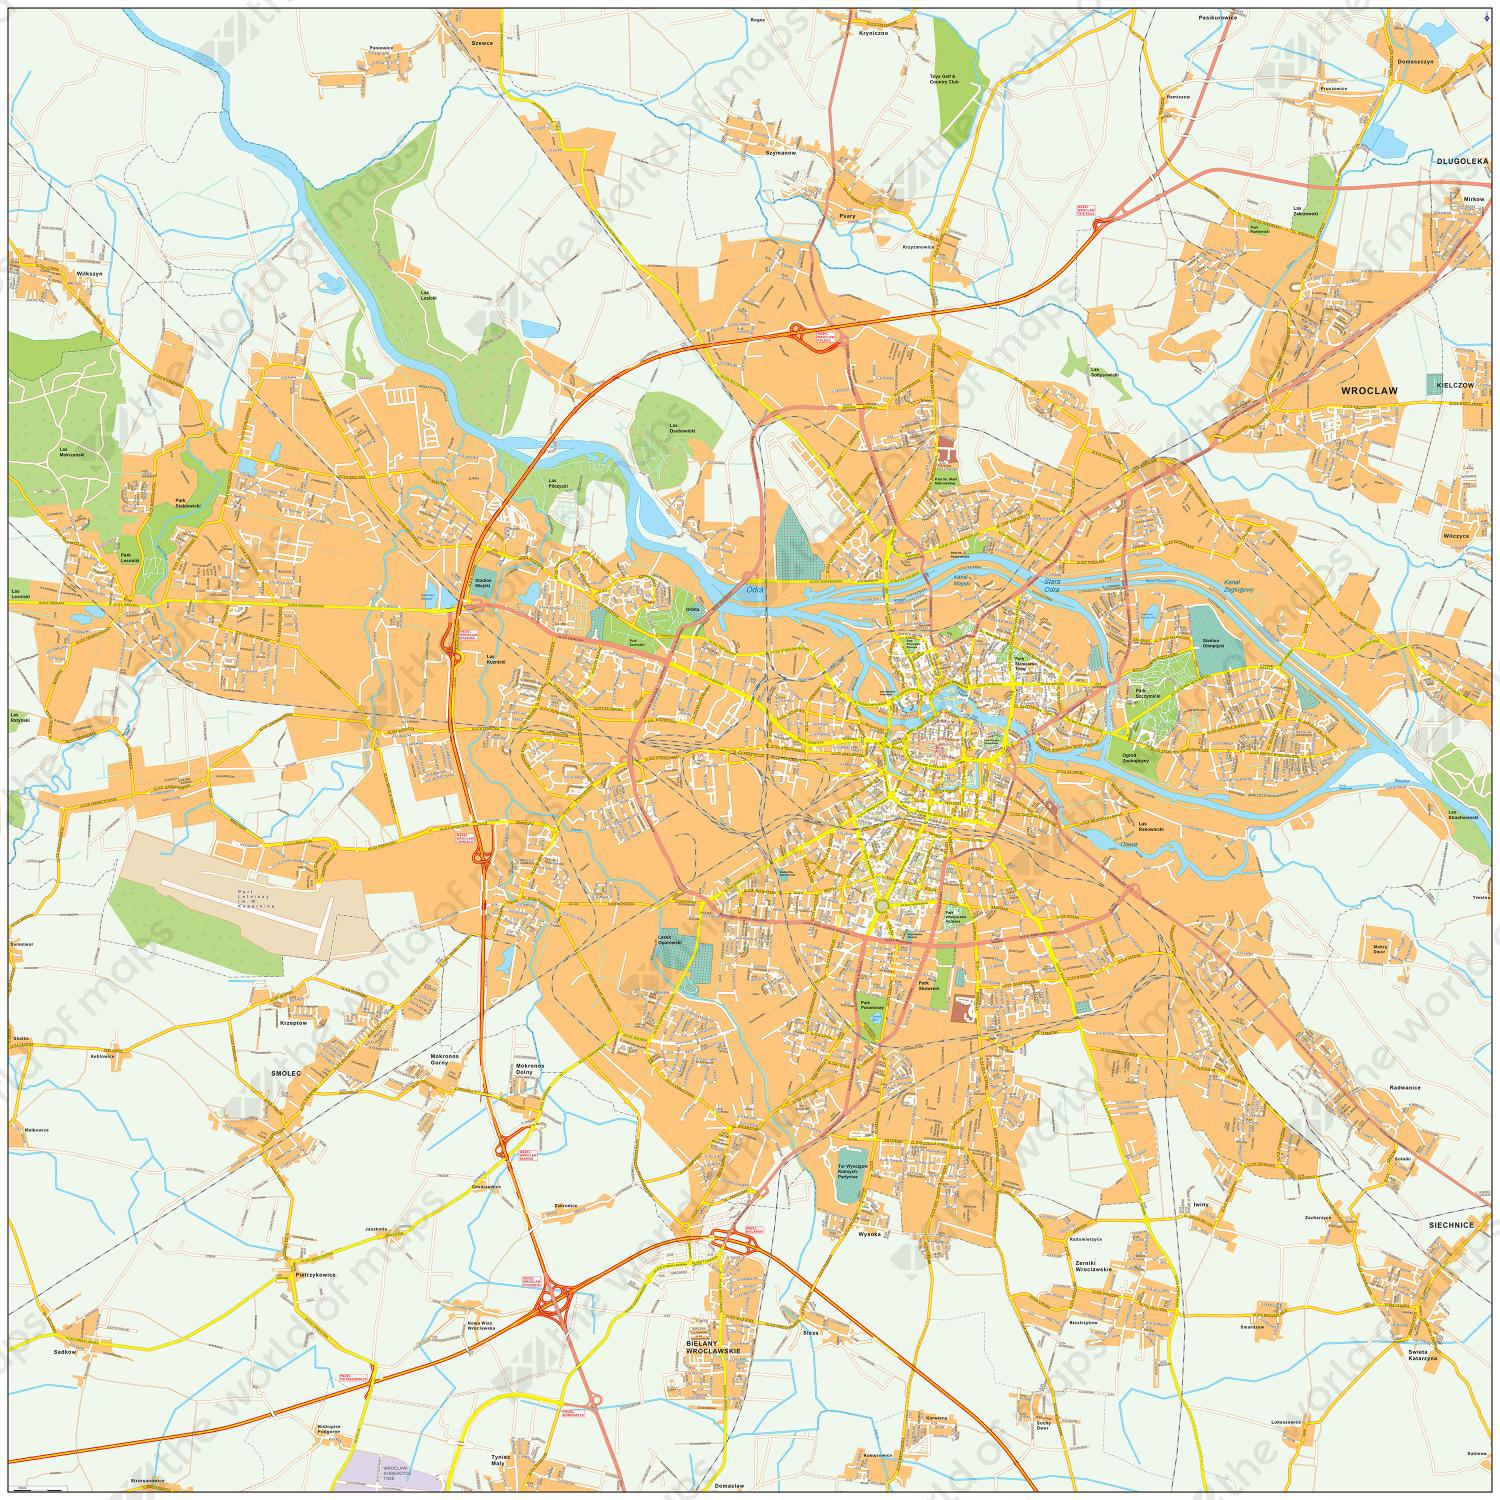 Digitale kaart Wroclaw 501